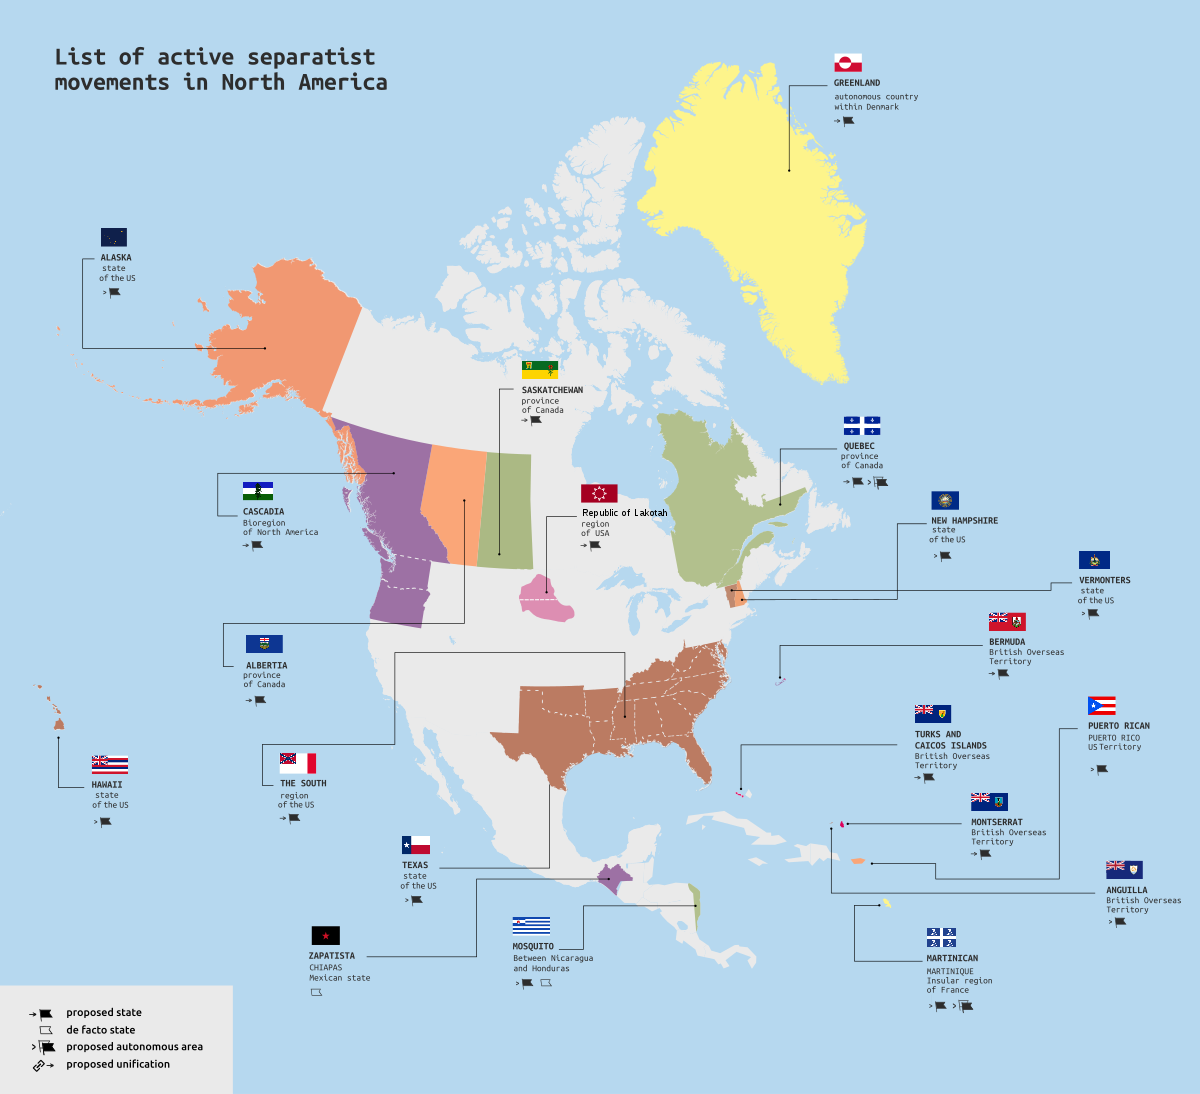 Техас хочет выйти. Карта сепаратистских движений в США. Сепаратизм в Северной Америке на карте. Сепаратистская карта США. Сепаратизм в США.